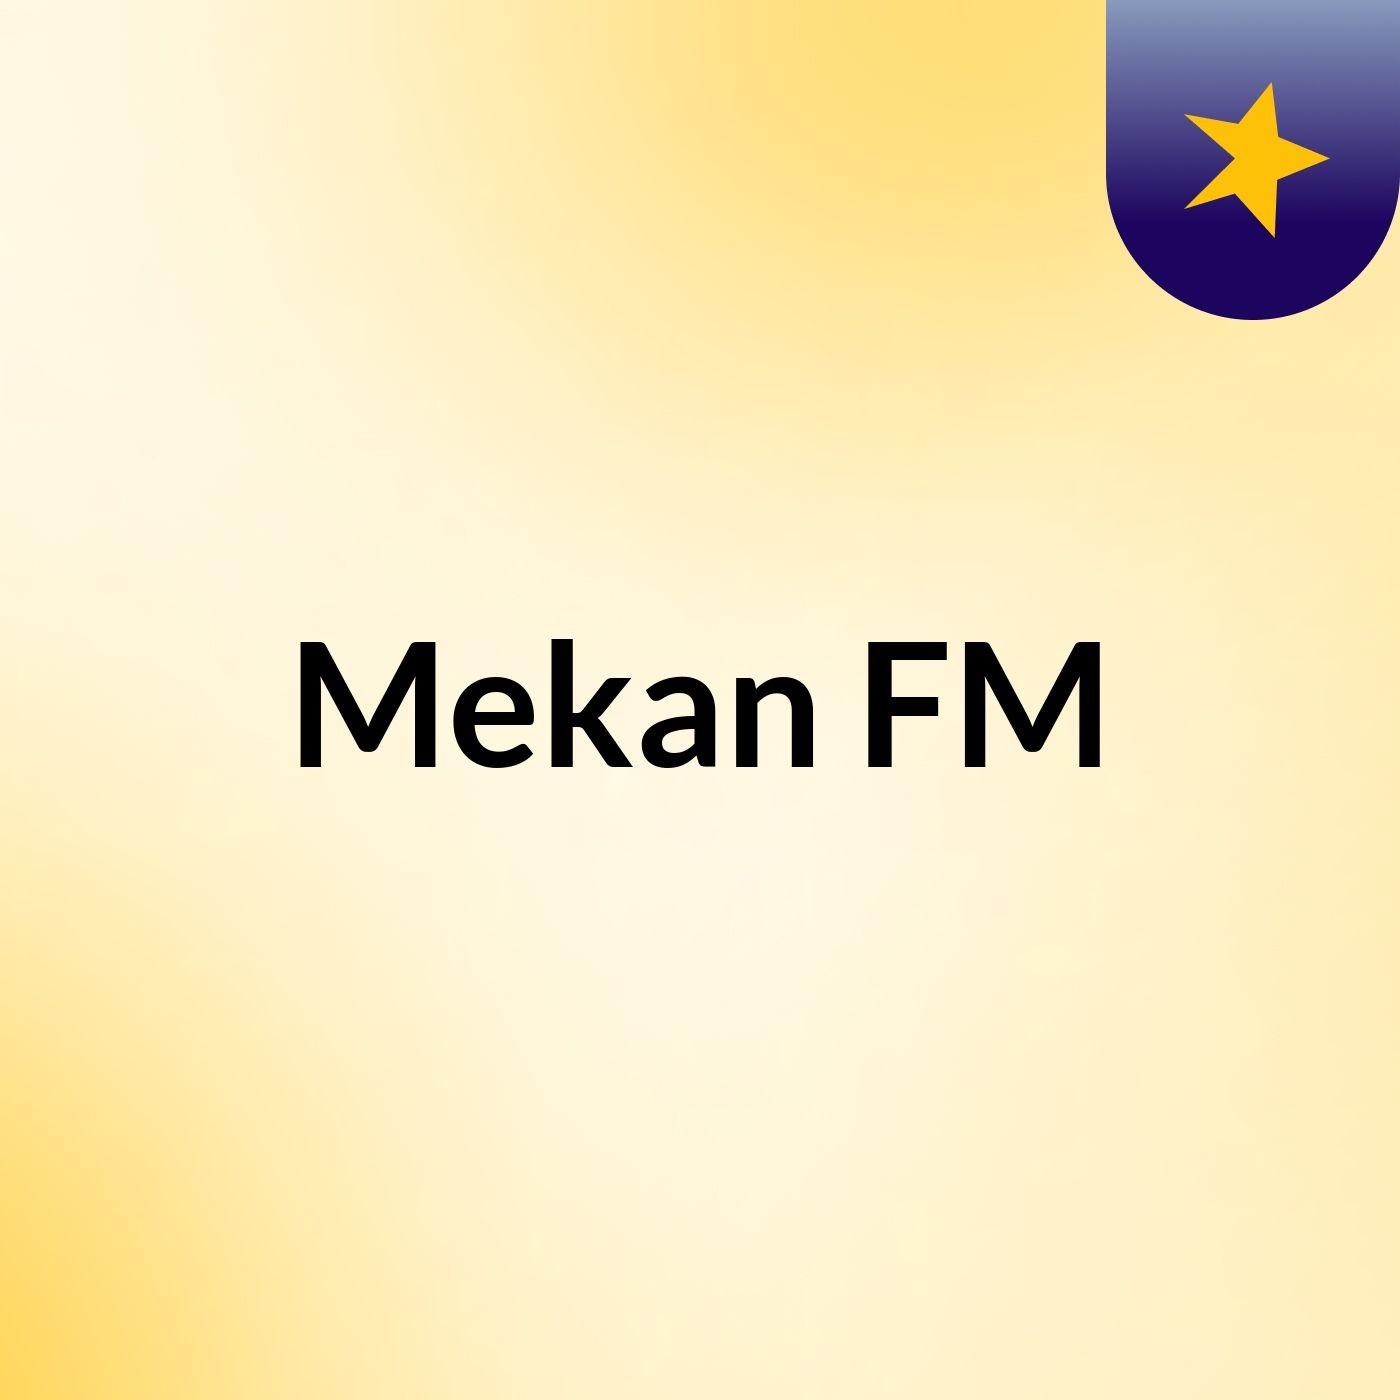 Mekan FM